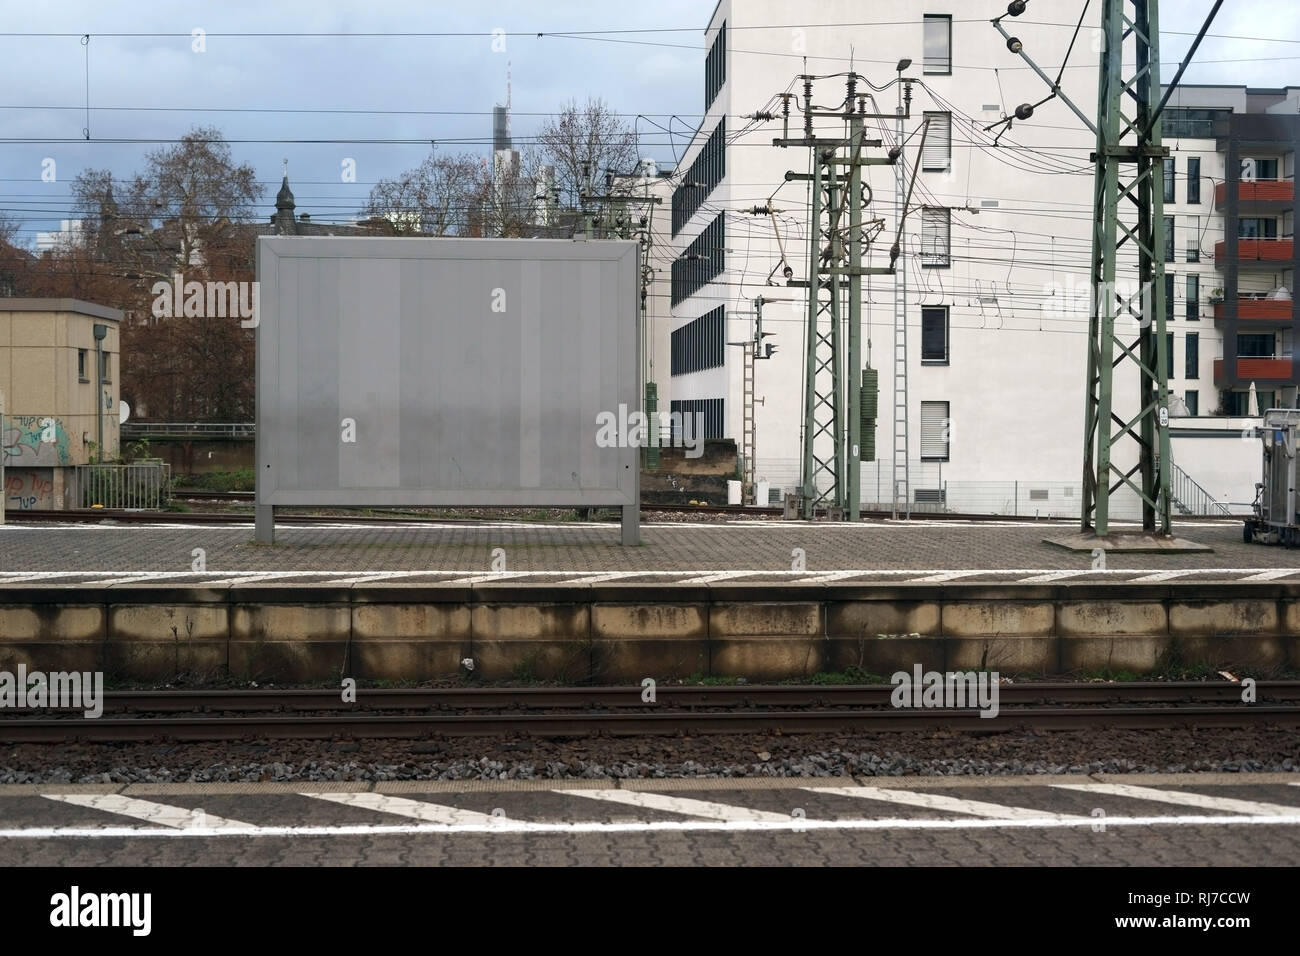 Eine leere Plakatwand und Werbefläche steht auf einem Bahnsteig an den Gleisen. Stock Photo